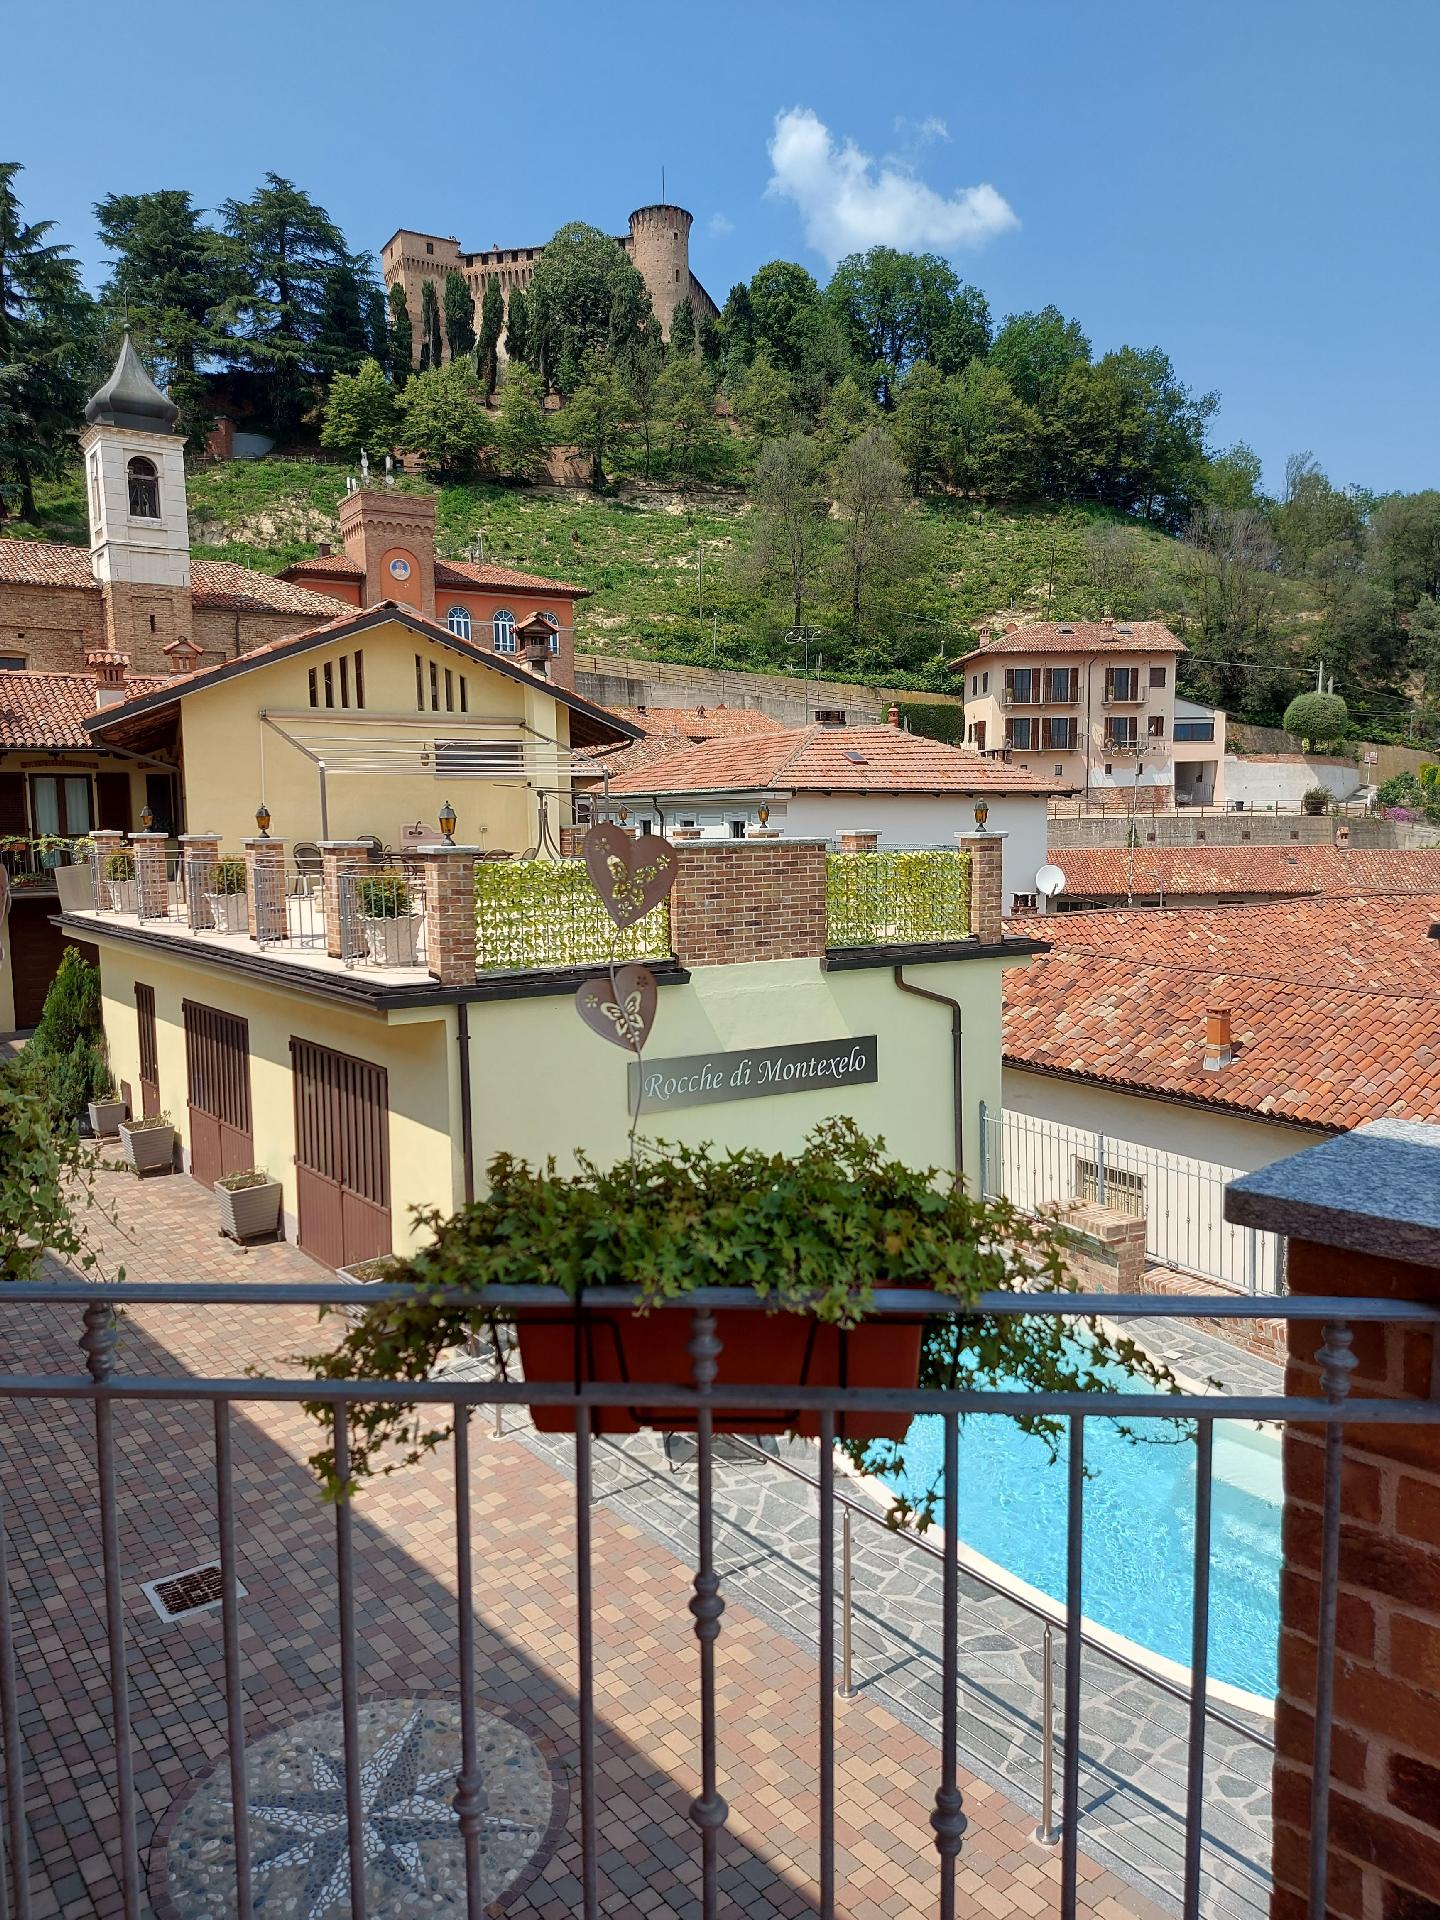 Ferienwohnung für 4 Personen ca. 32 m² i  in Italien